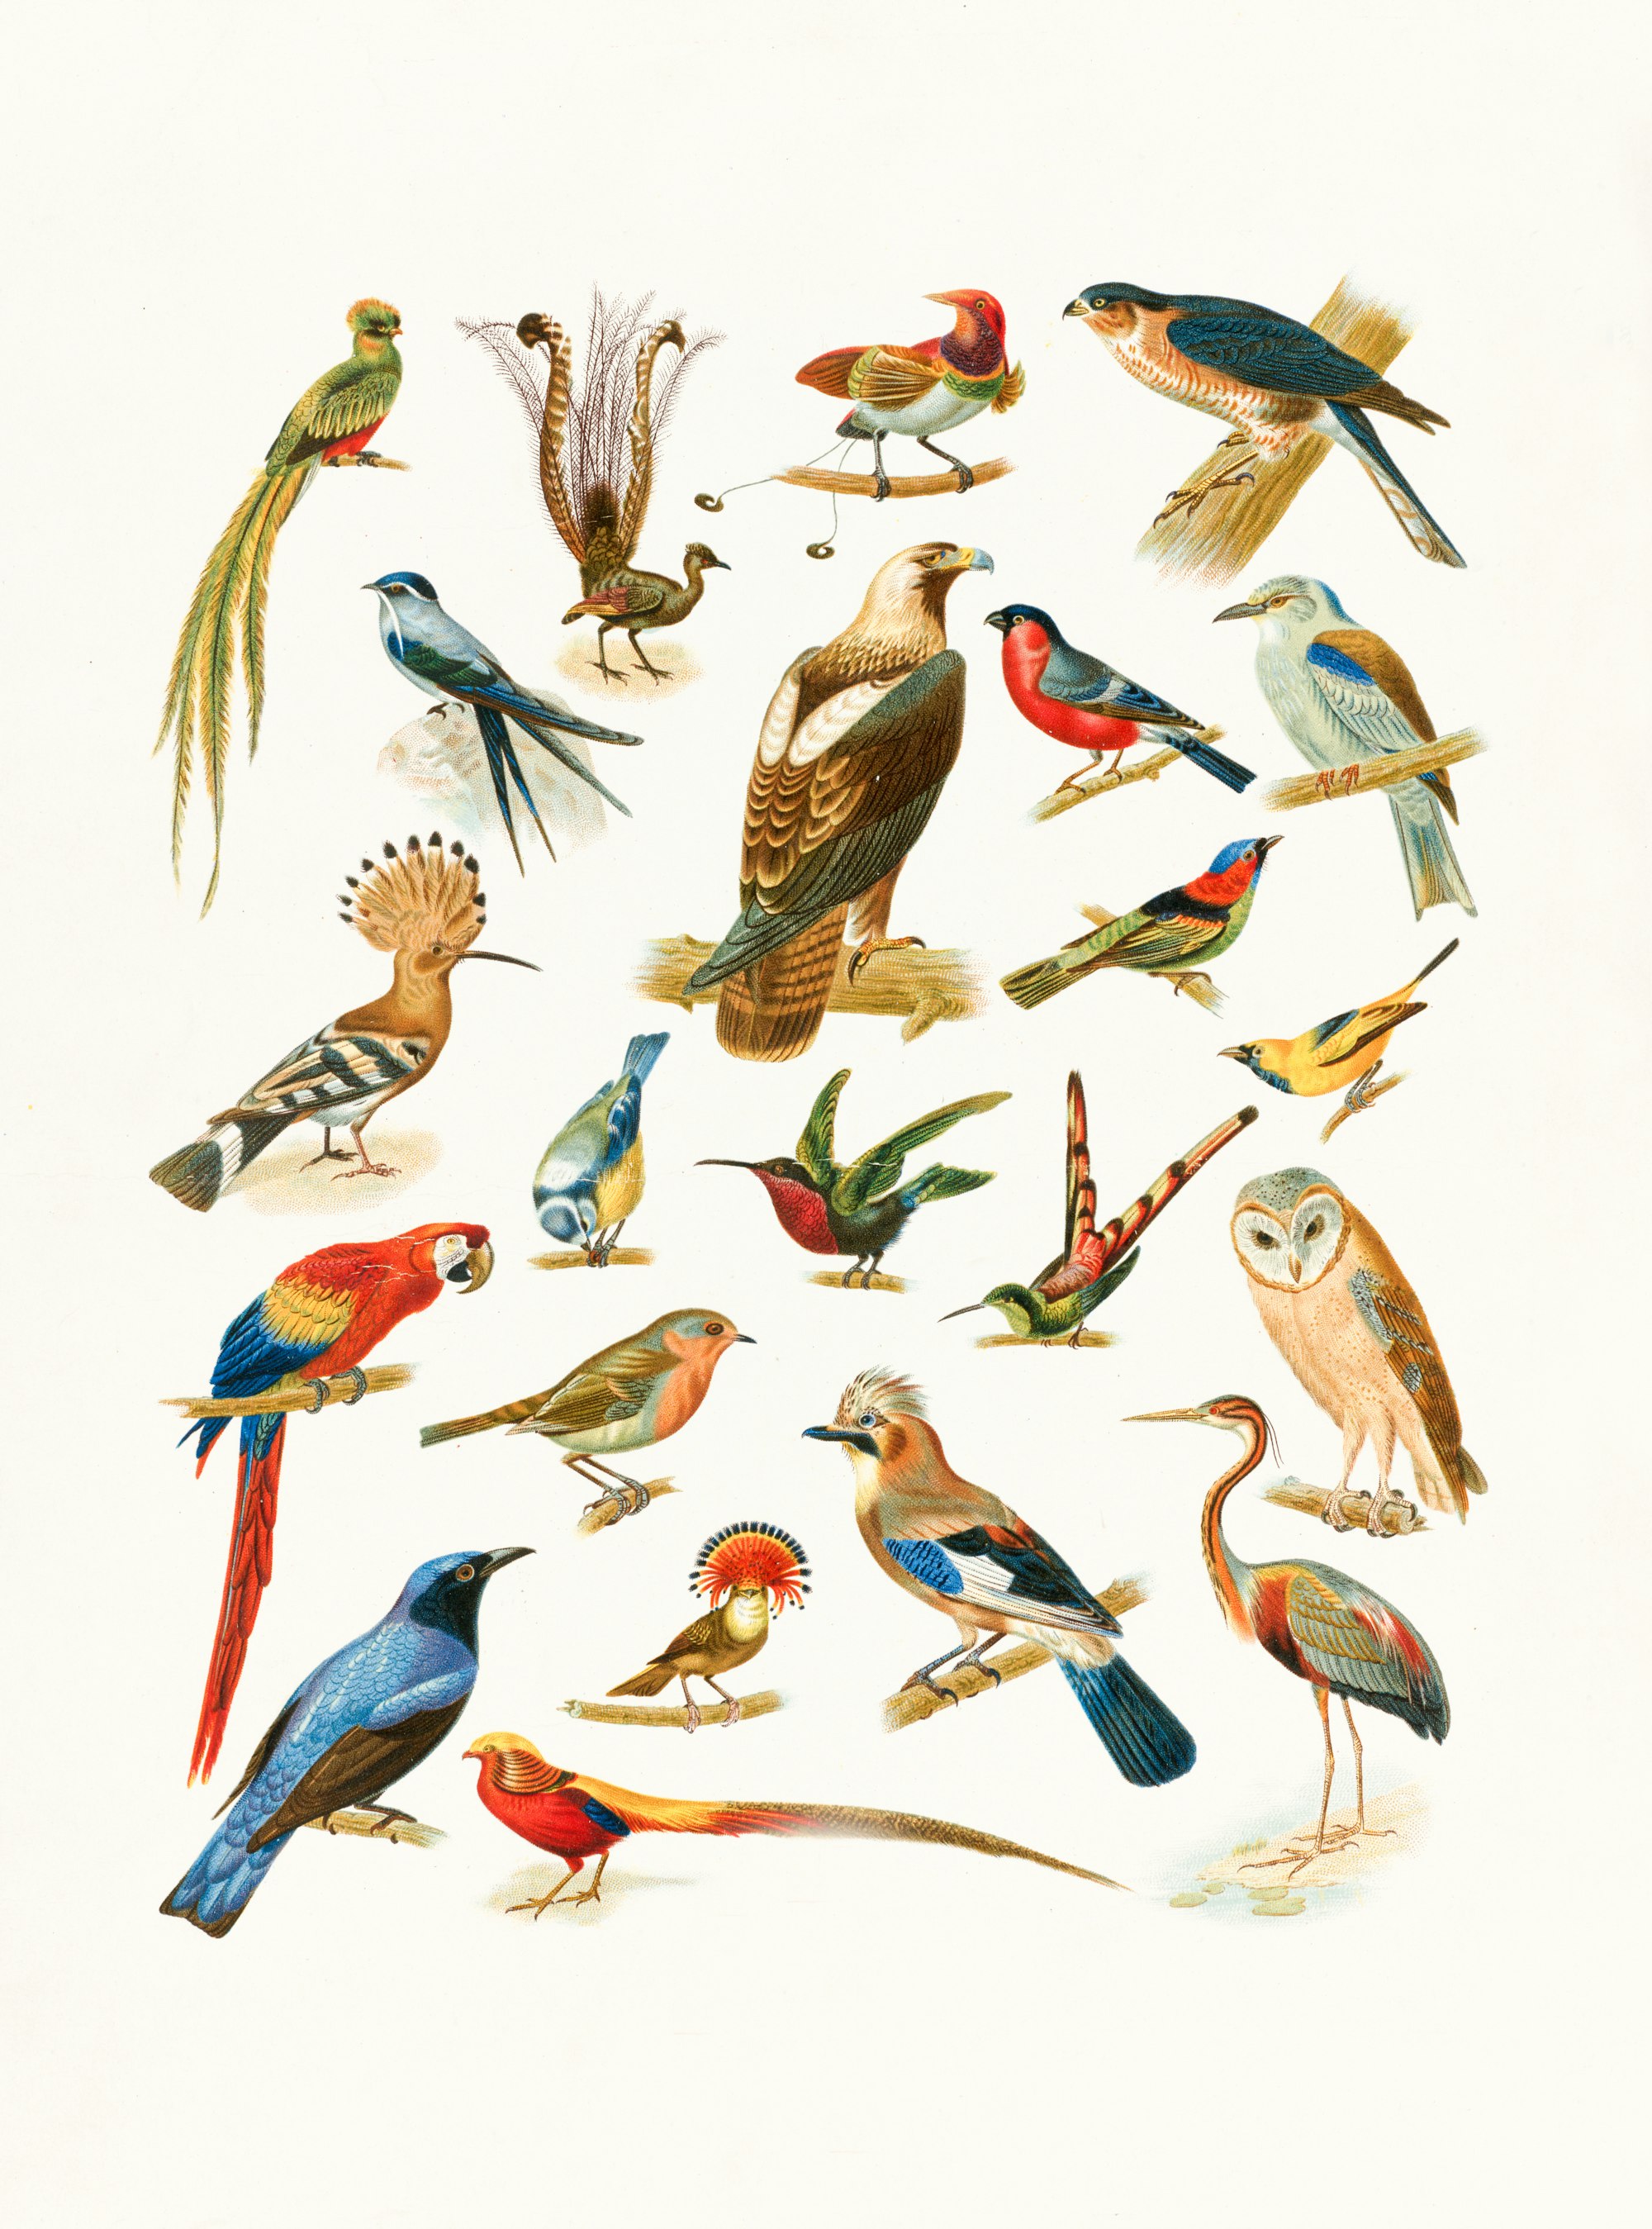 22 Species of Birds https://ark.digitalcommonwealth.org/ark:/50959/6d56zx52j

Please visit Digital Commonwealth to view more images: https://www.digitalcommonwealth.org.

 